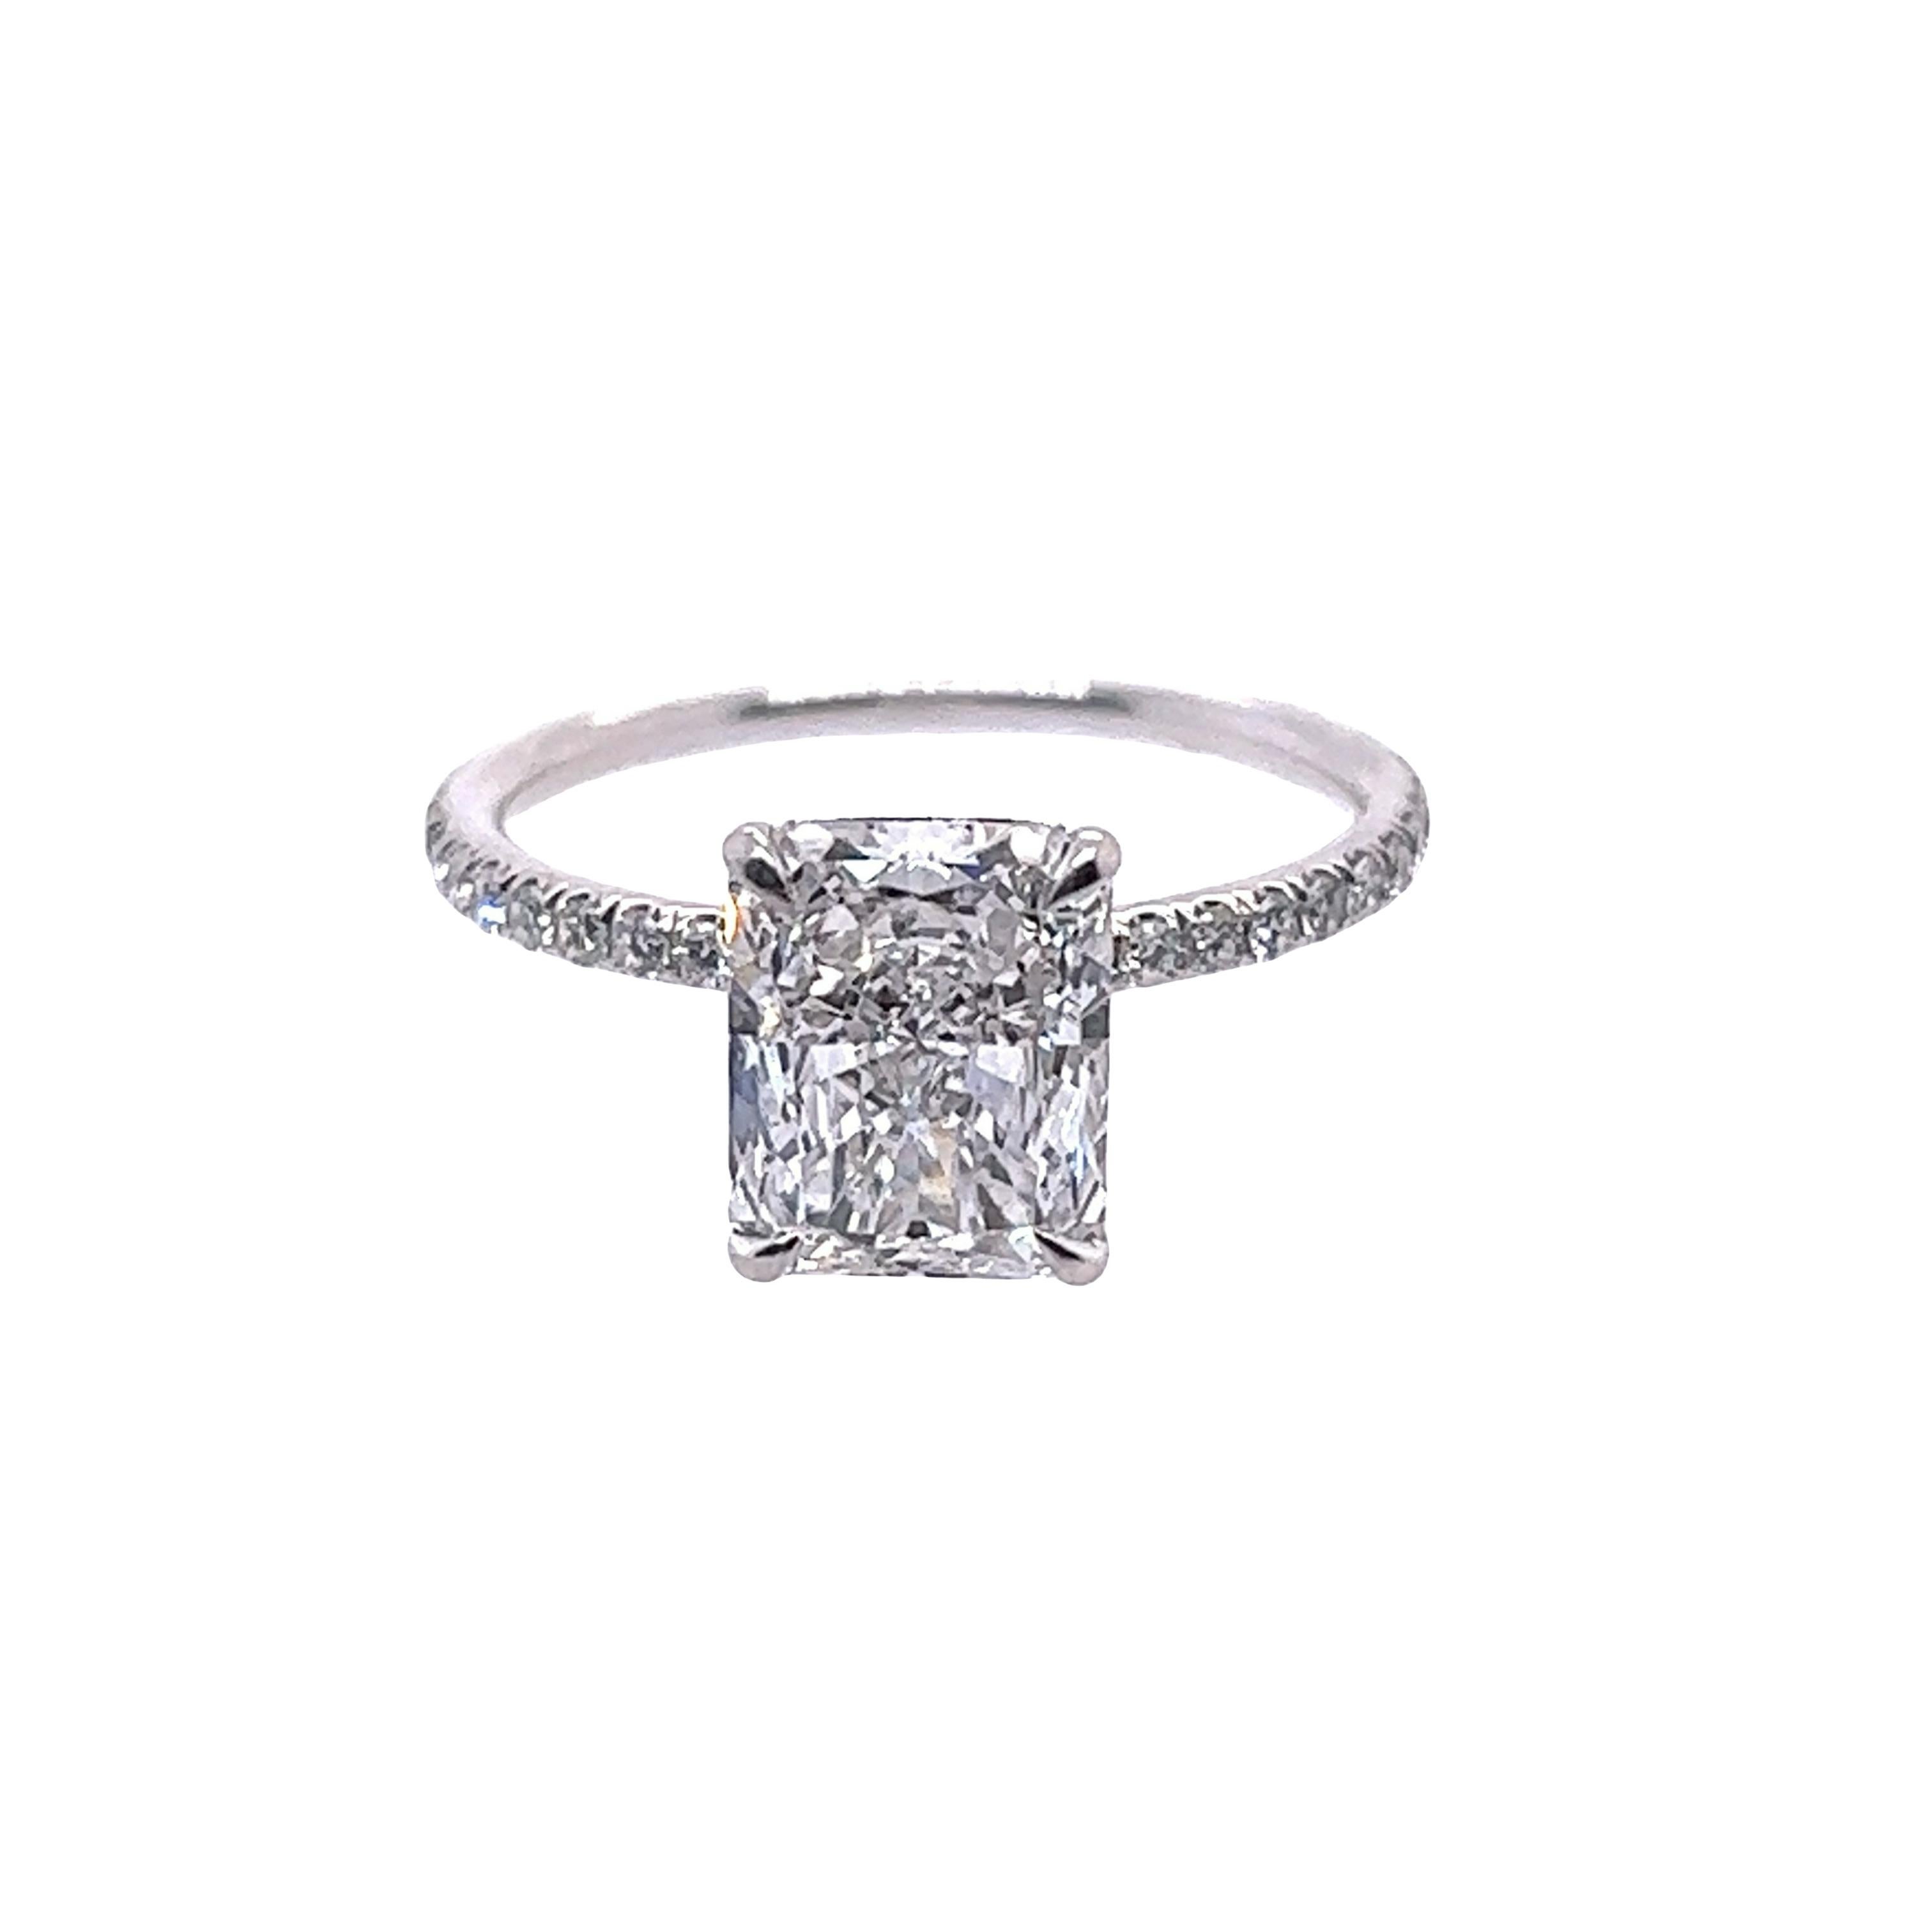 Rosenberg Diamonds & Co. 2,30 Karat Radiant-Schliff D Farbe Makellos Klarheit wird von einem GIA-Zertifikat begleitet. Dieser exquisite Radiant-Schliff ist voller Brillanz und wird in einer handgefertigten Platinfassung gefasst. Dieser Ring setzt